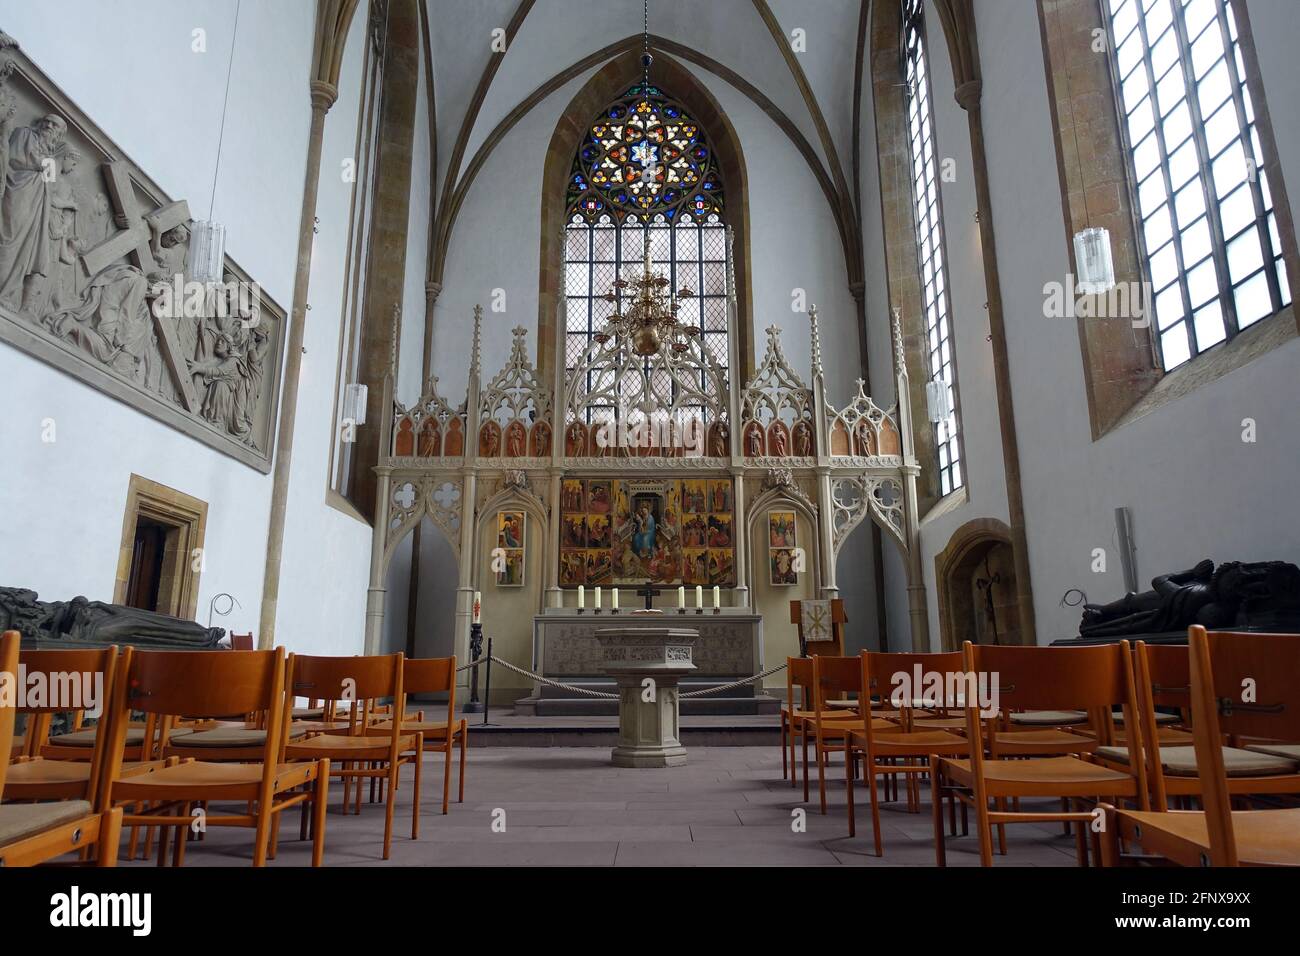 evangelische Neustädter Marienkirche aus dem 15. Jahrhundert - Marienaltar, Bielefeld, Nordrhein-Westfalen, Deutschland Stock Photo